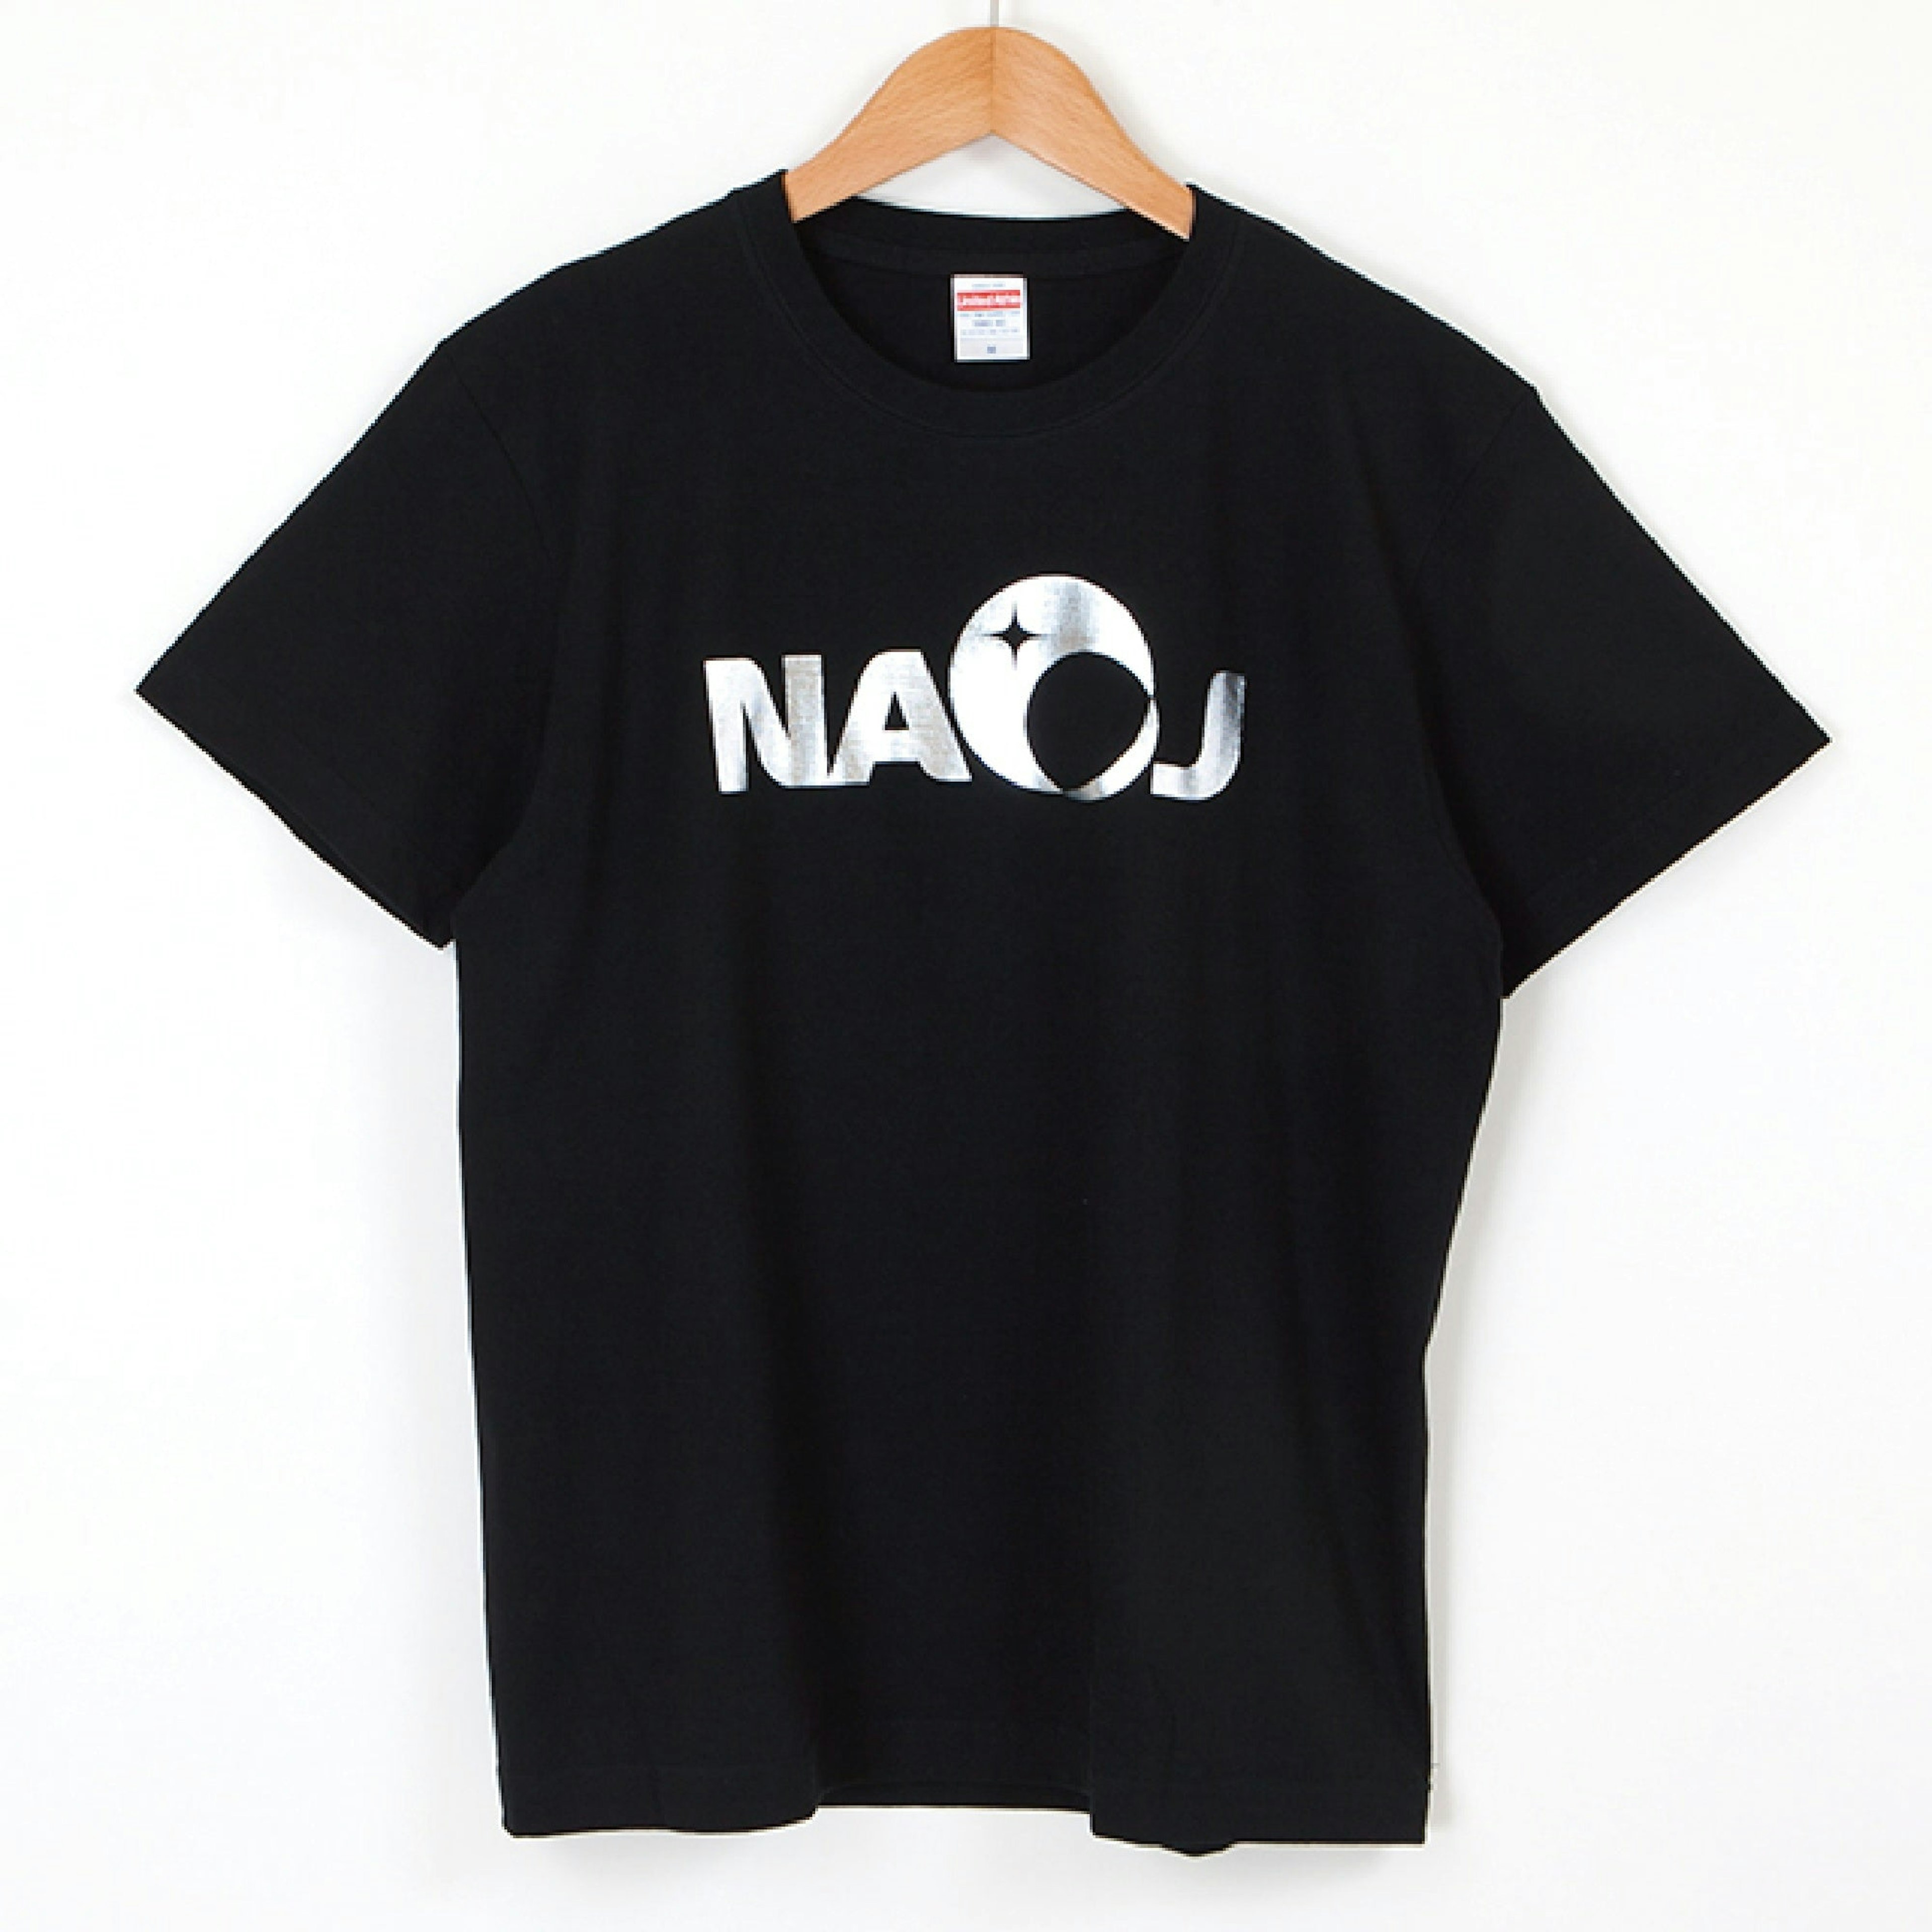 国立天文台 NAOJ ロゴマーク きらきらTシャツ